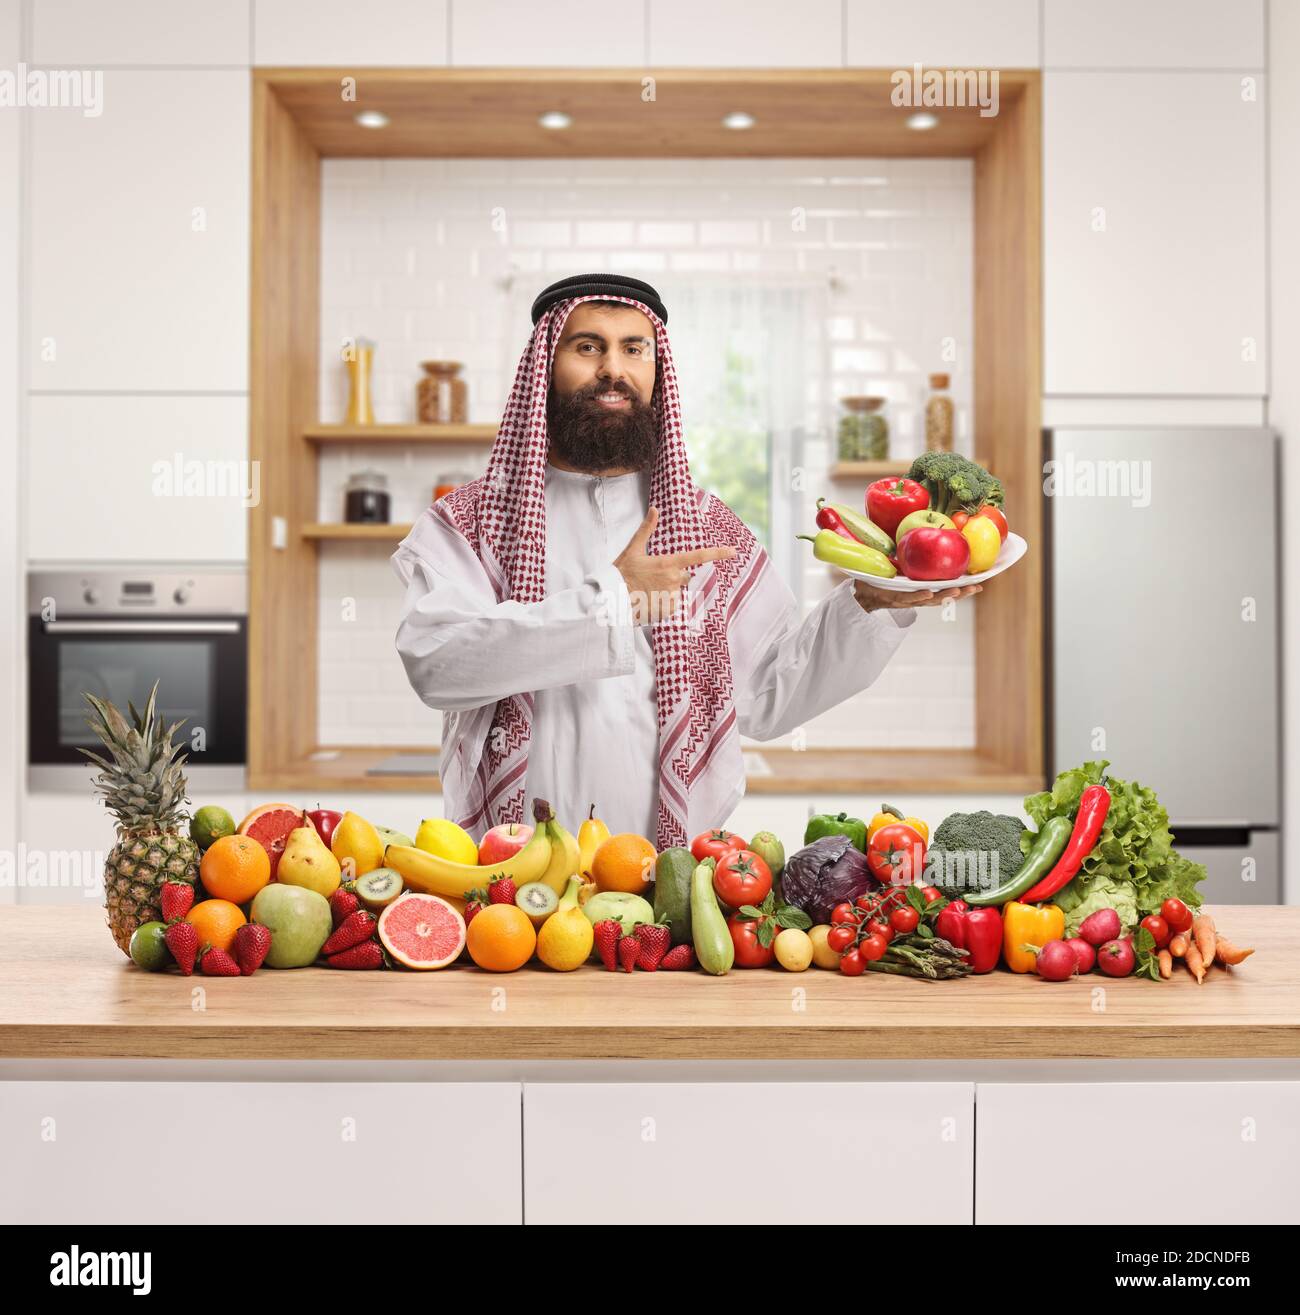 Saudi-arabischen Mann hält einen Teller mit frischen Früchten und Gemüse in einer modernen Küche Stockfoto